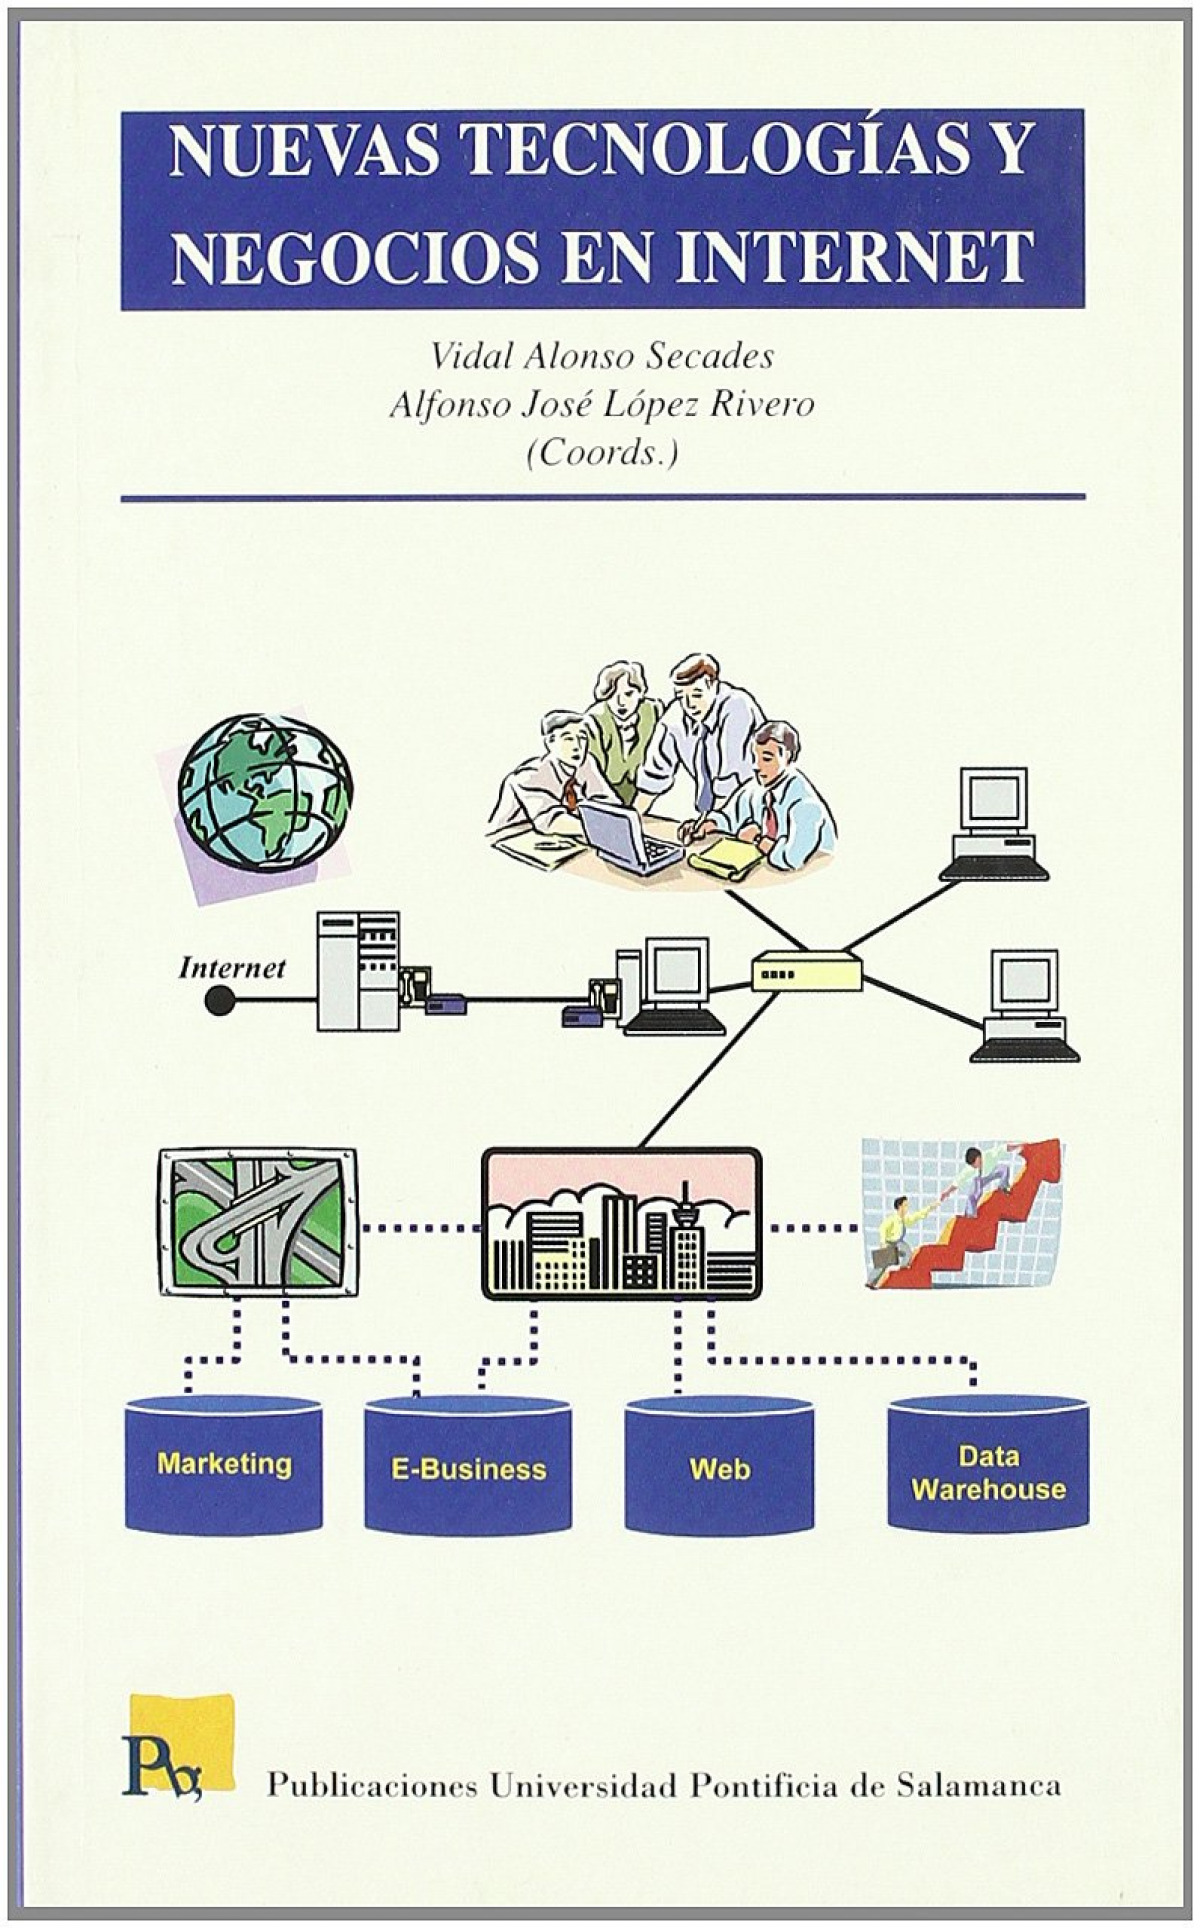 Imagen de portada del libro Nuevas tecnologías y negocios en Internet